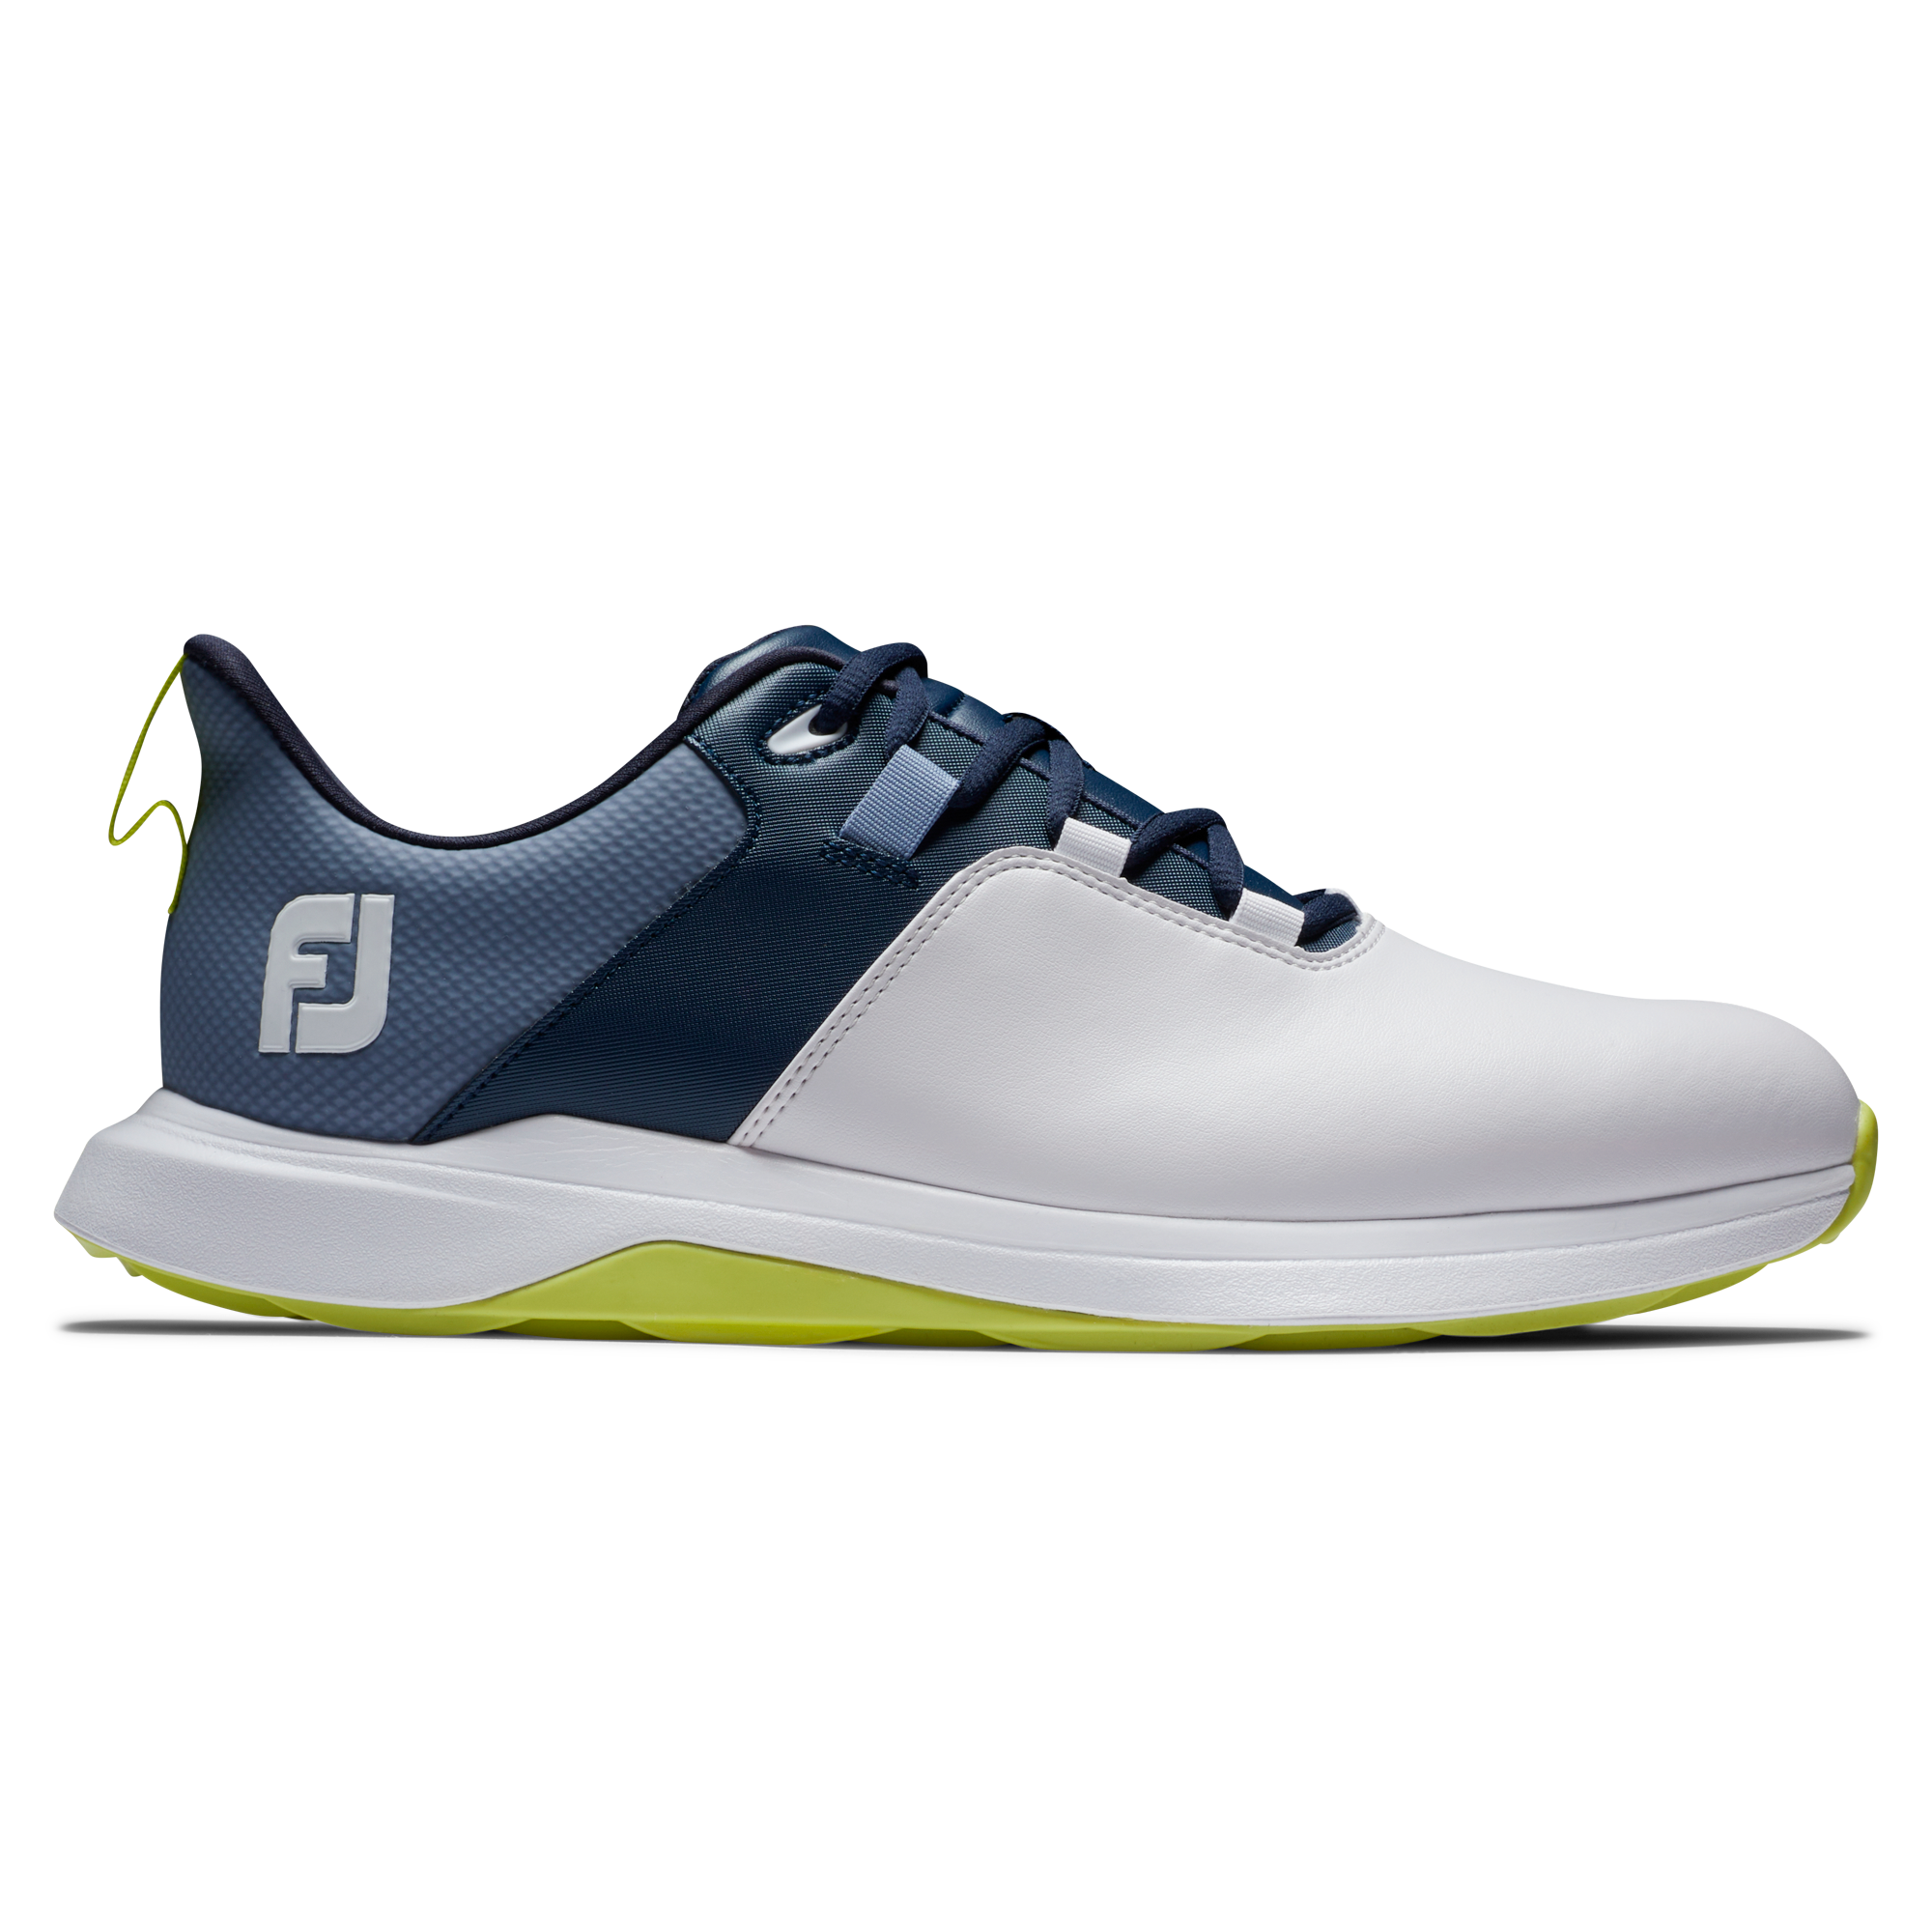 FootJoy ProLite pánské golfové boty, bílé/tmavě modré, vel. 8,5 UK